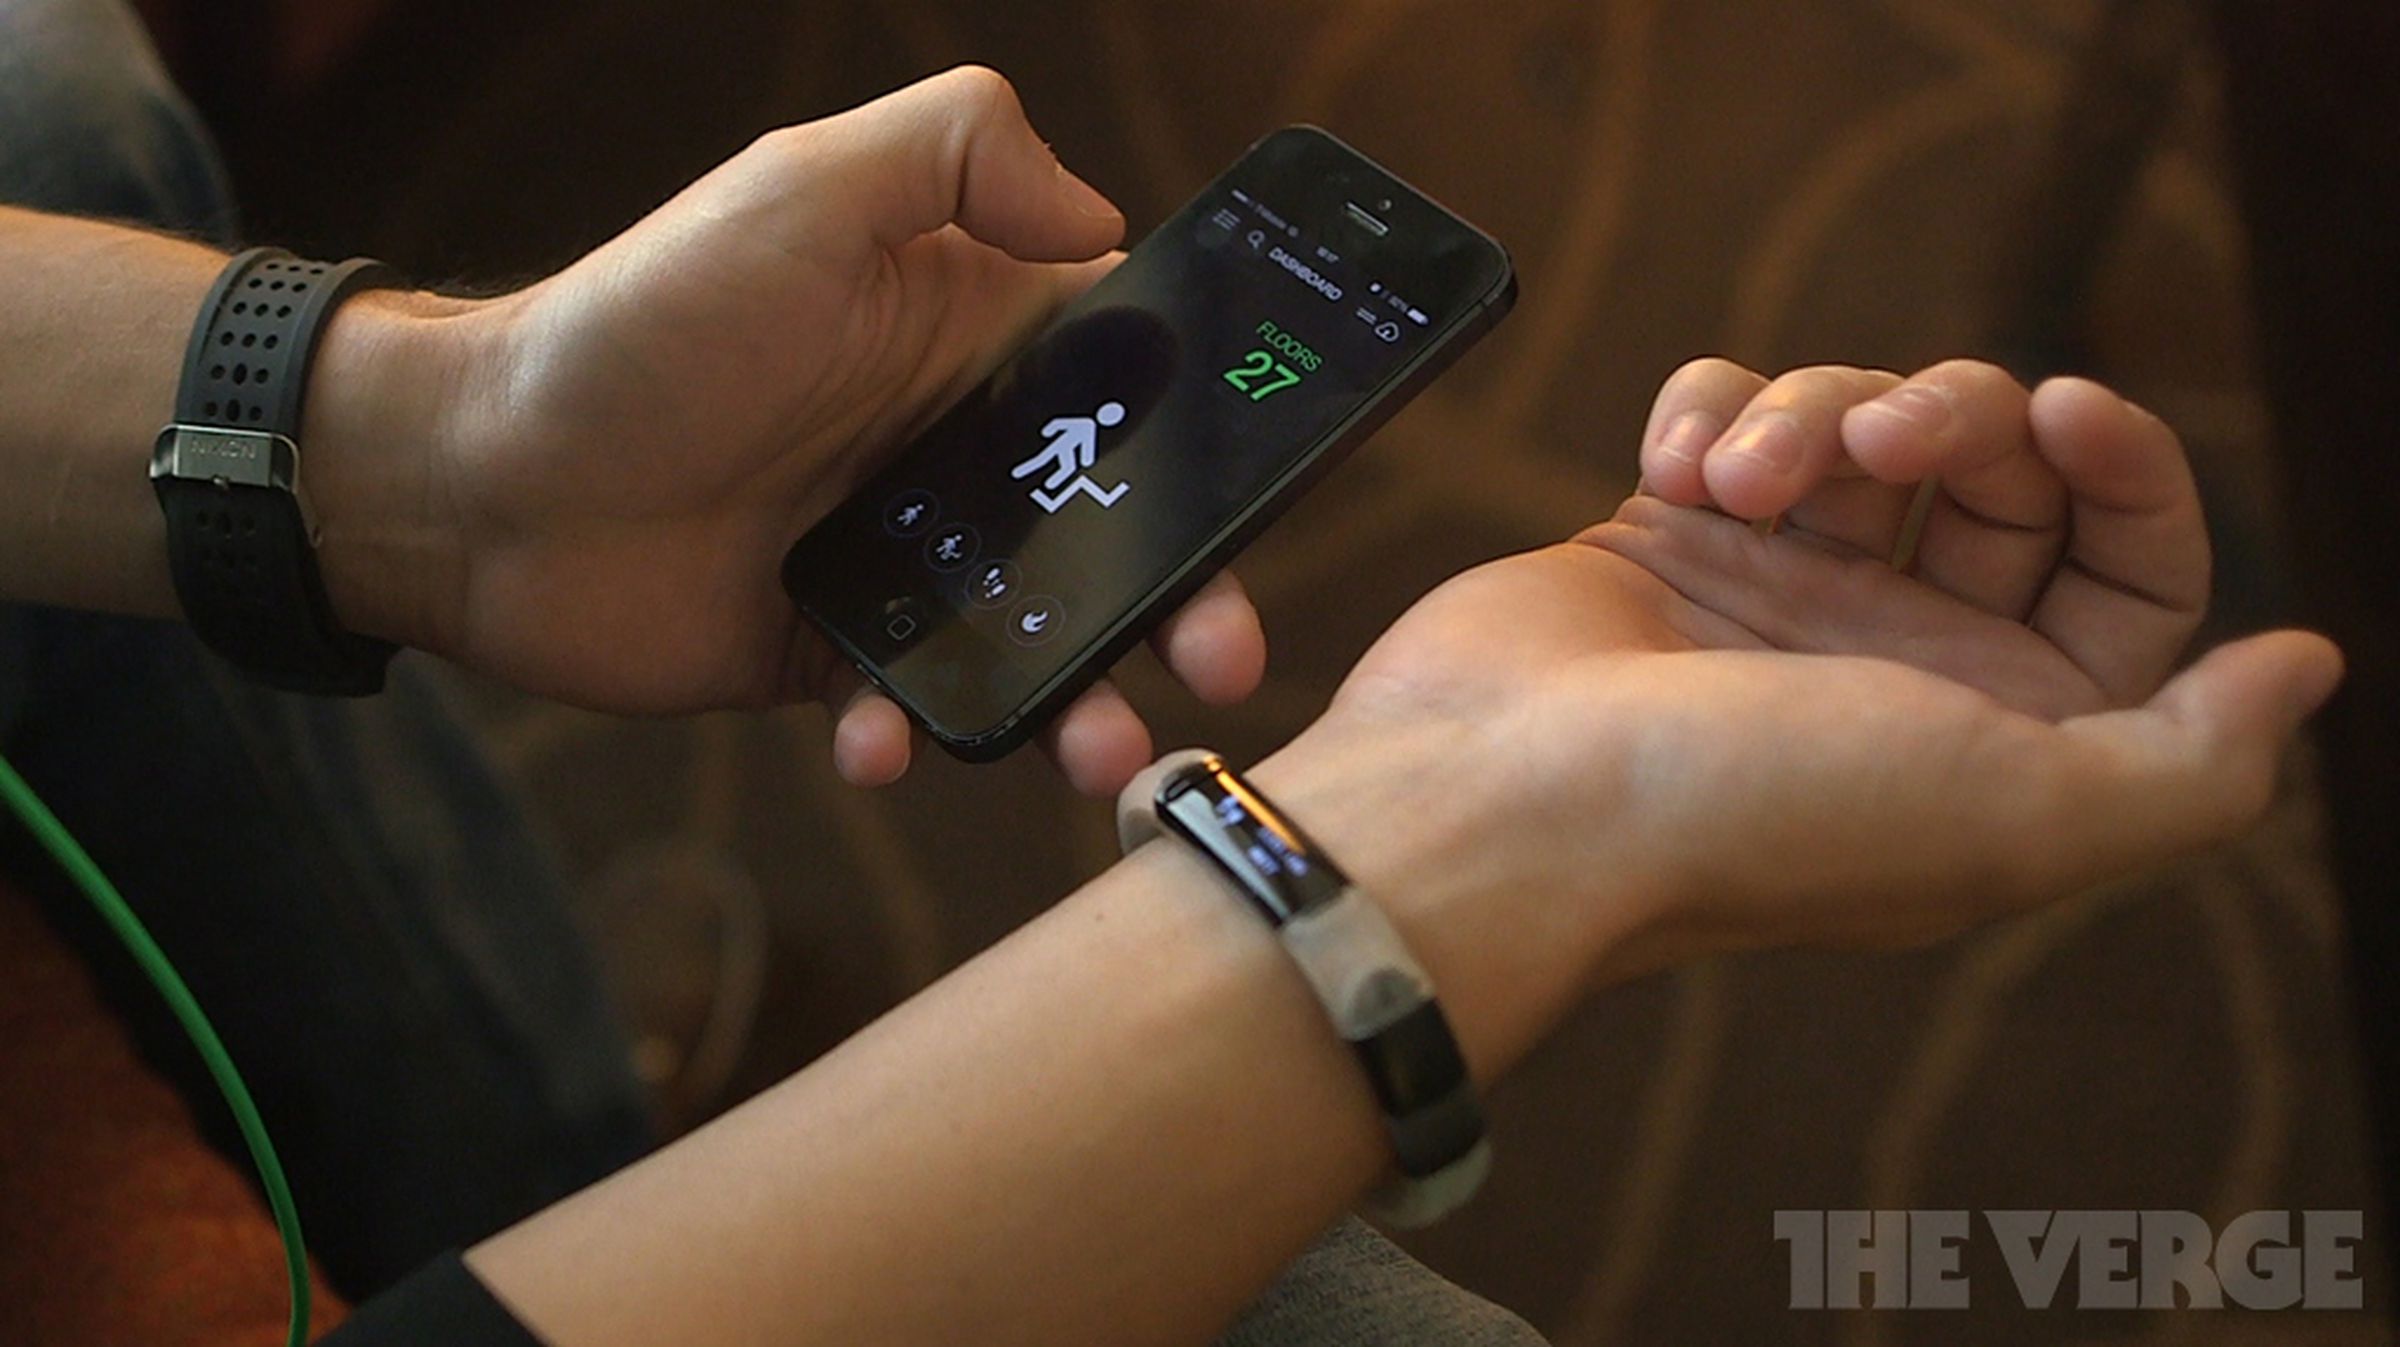 Razer Nabu smartband hands-on images